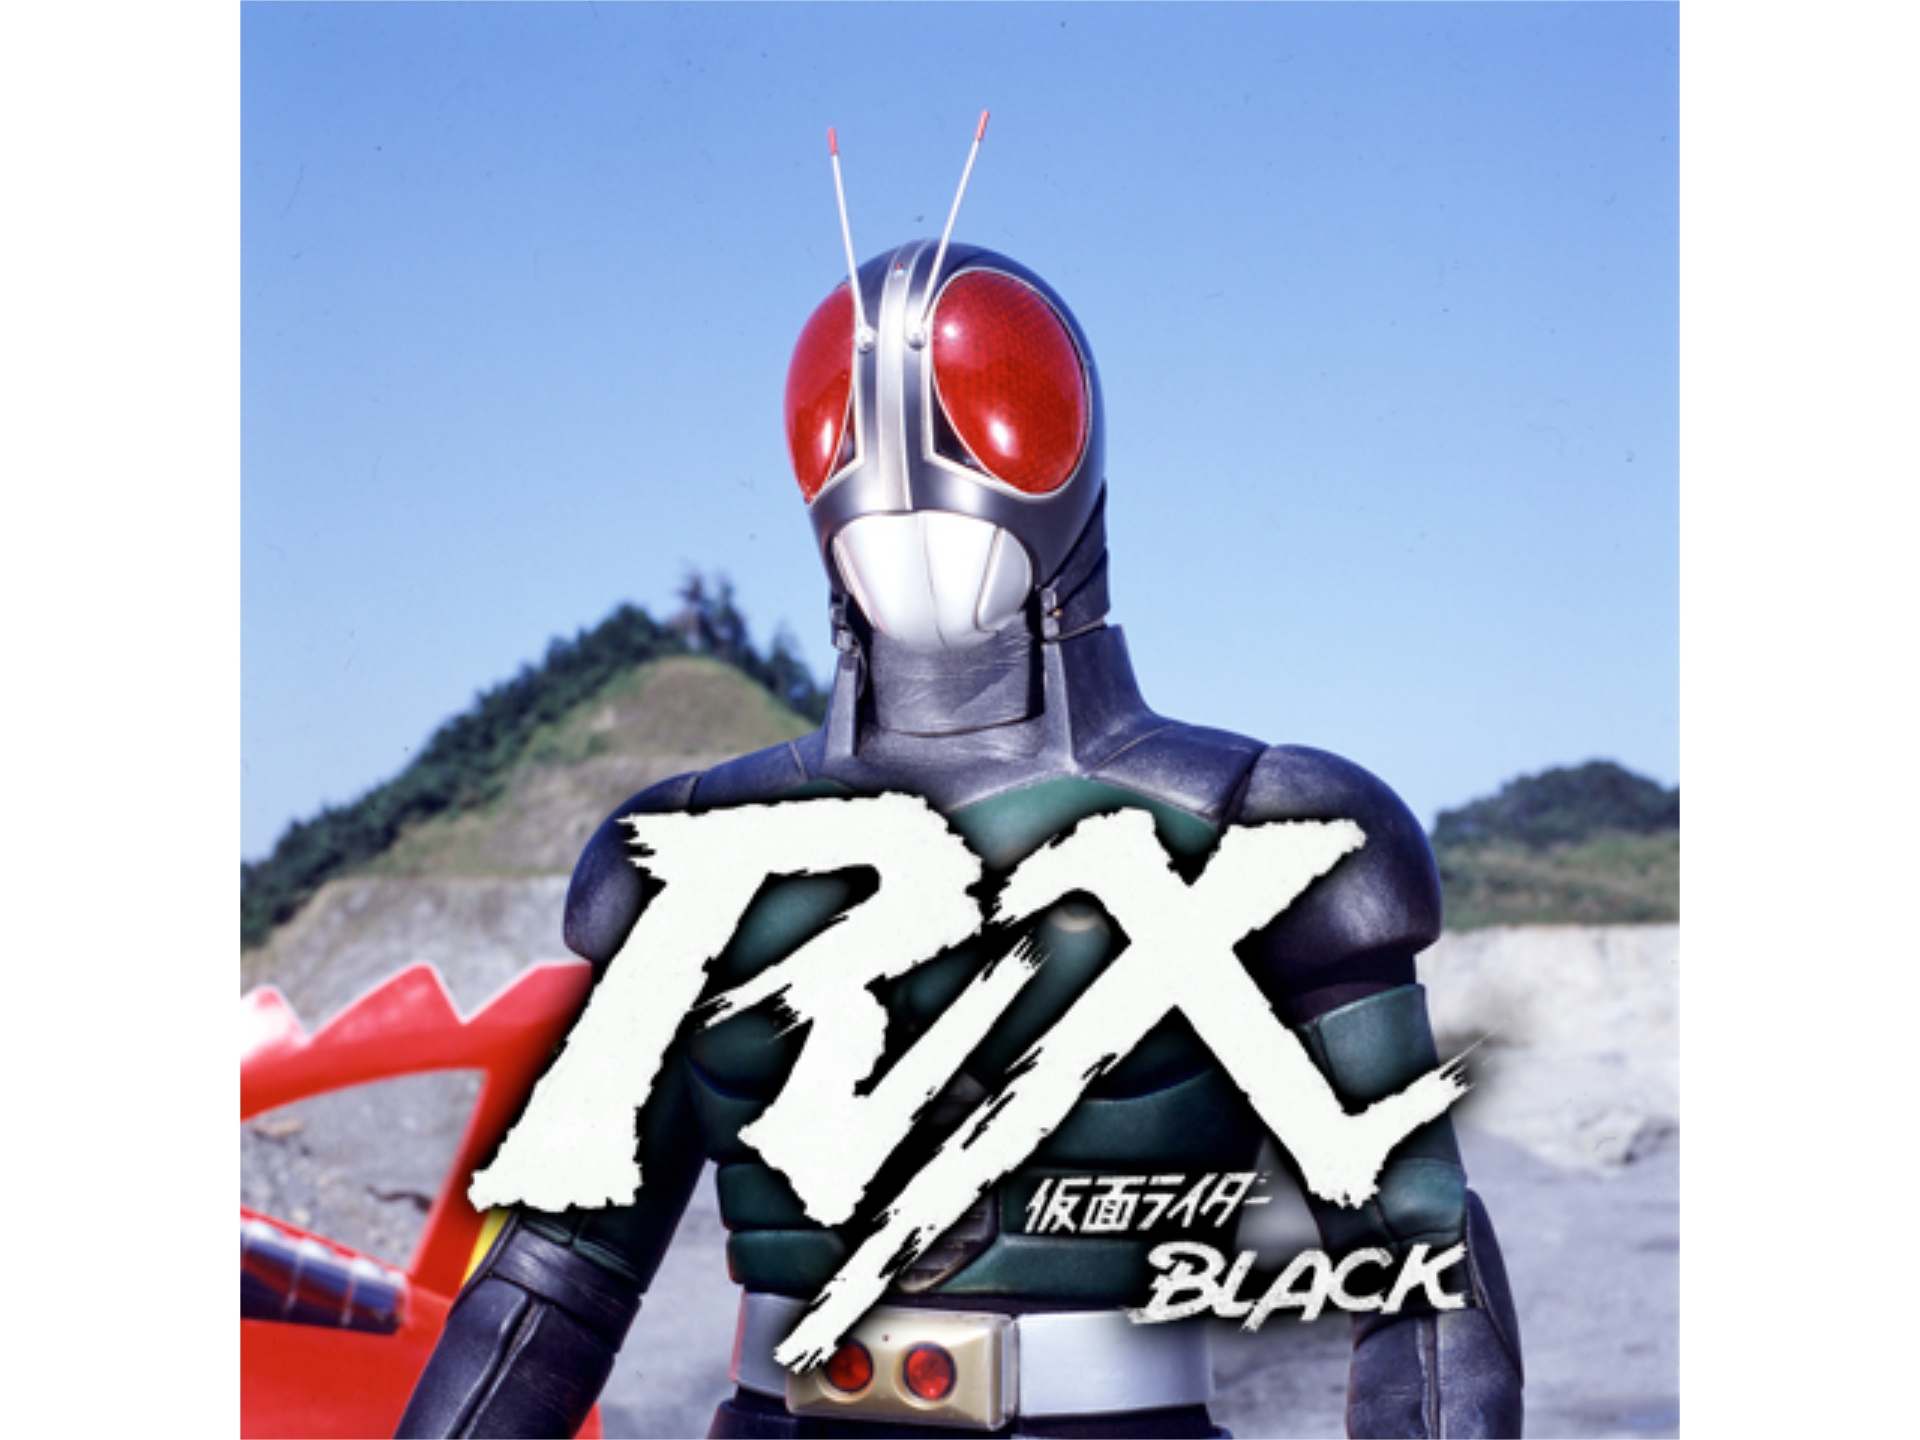 仮面ライダーblack Rx 第6話 第9話のまとめフル動画 初月無料 動画配信サービスのビデオマーケット